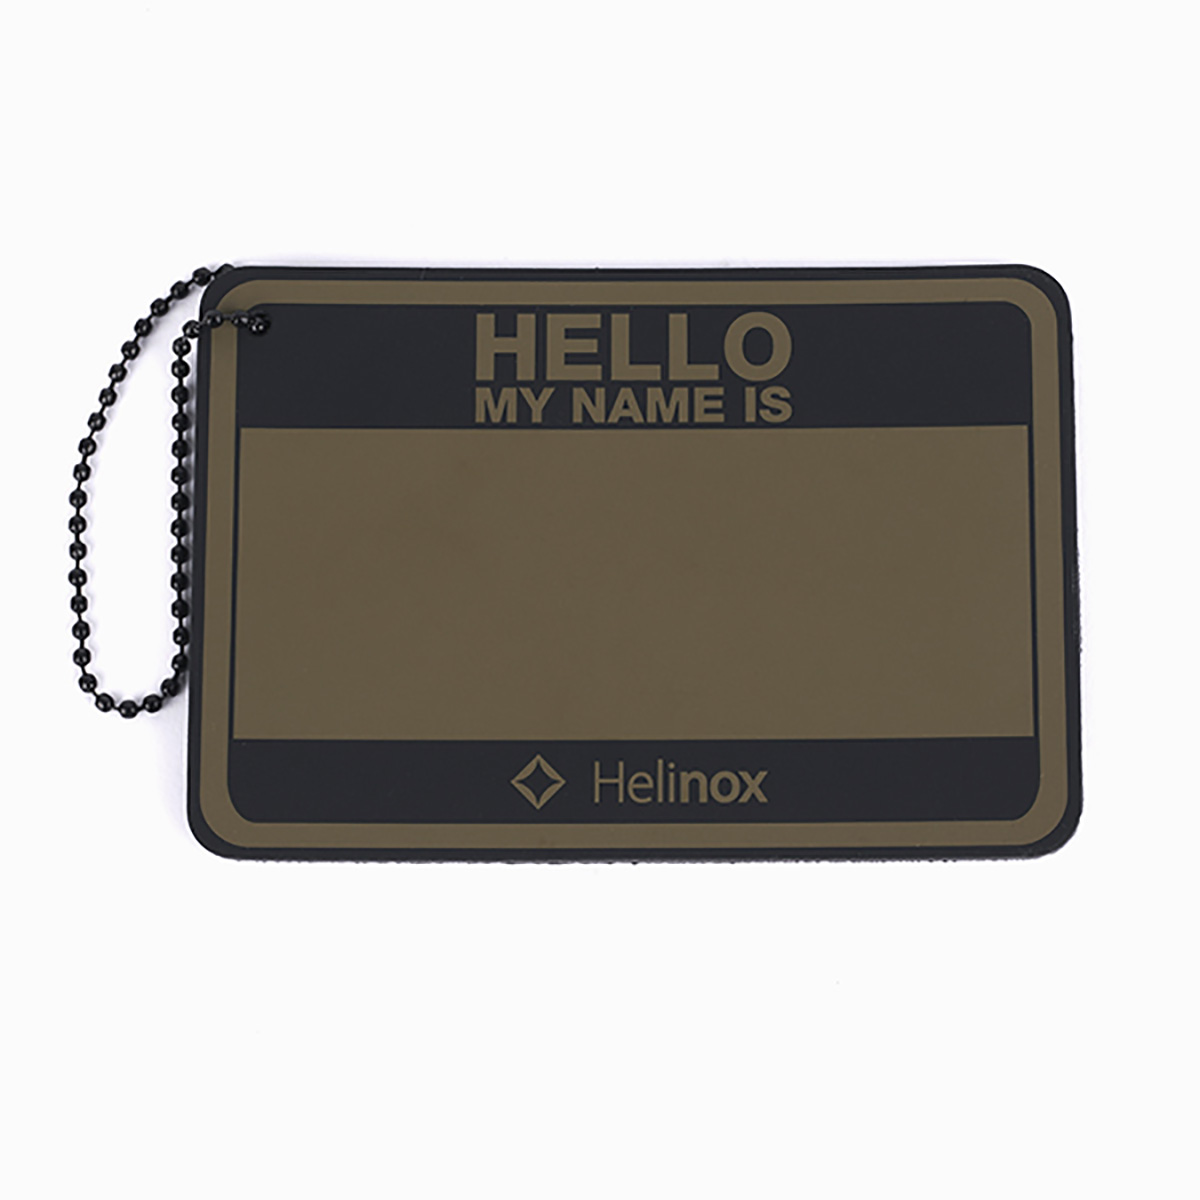 Hello My Name Is パッチ ハロー マイ ネーム イズ パッチ Helinox ヘリノックス 新潟のアウトドアライフストア West